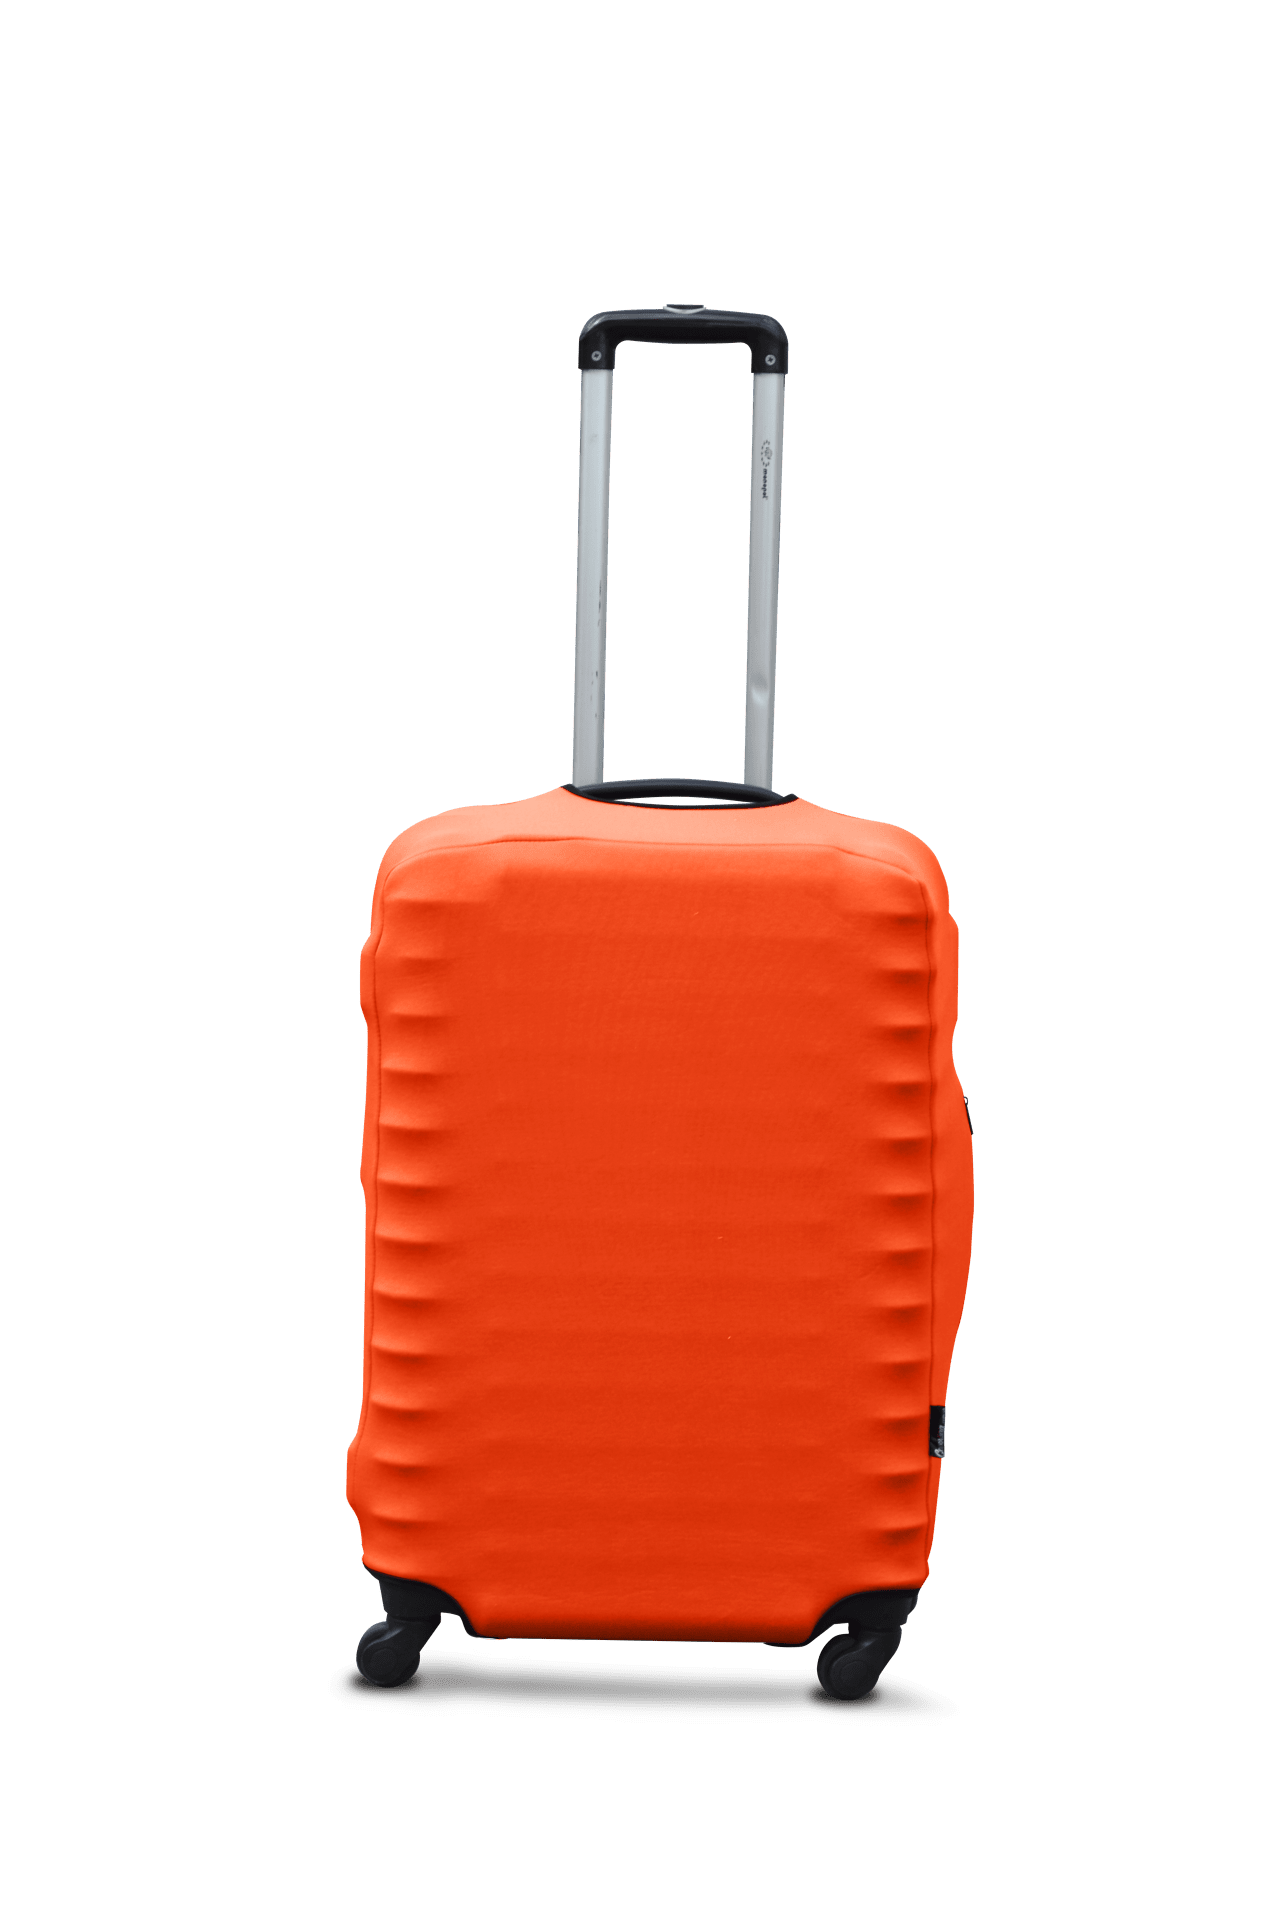 Husa pentru valiza daiving Cover dawing L ORANGE - 1